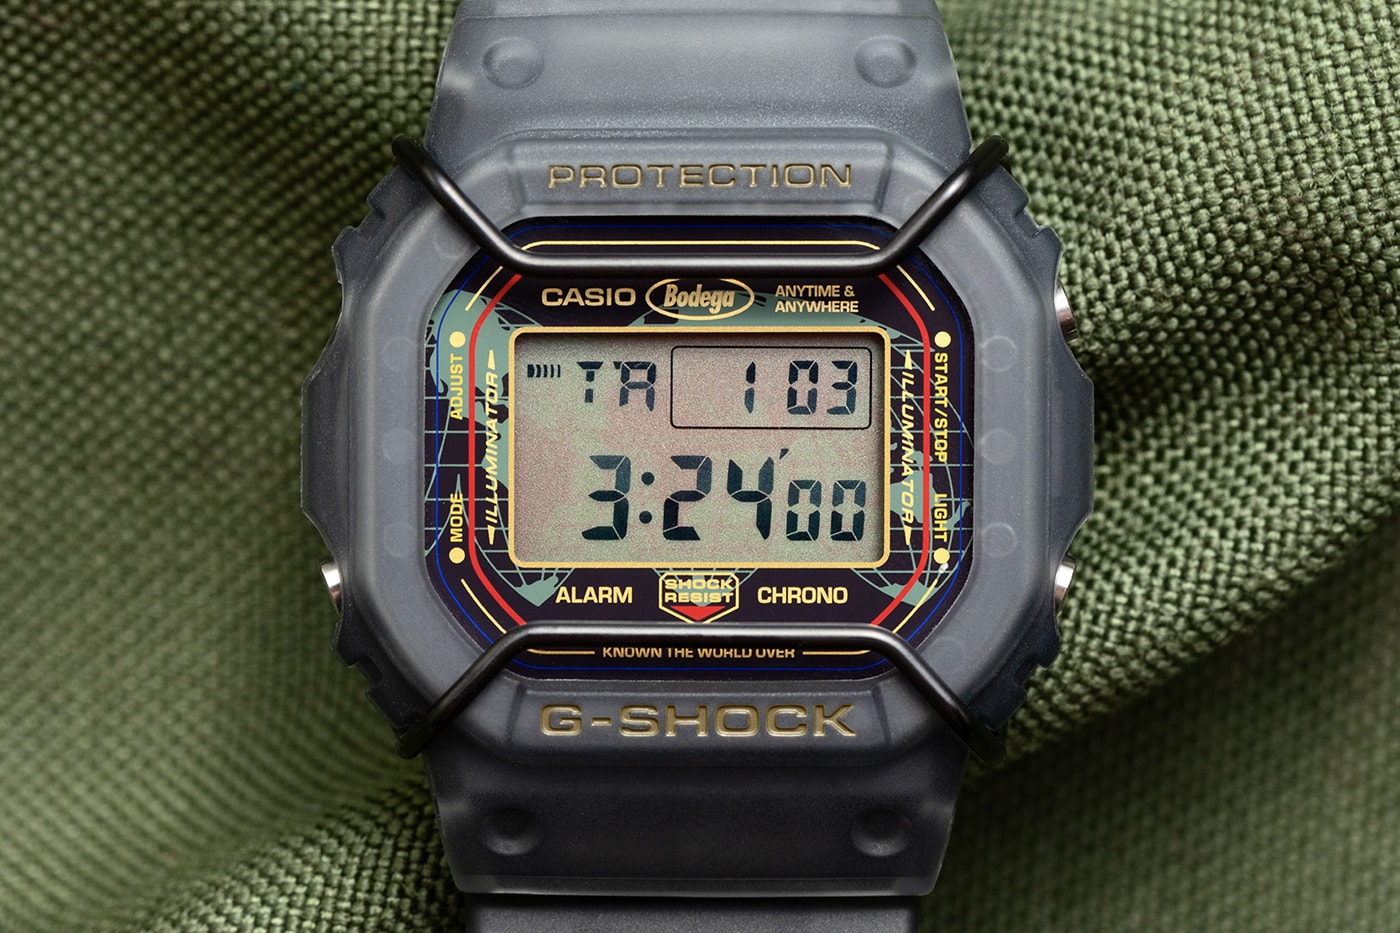 G-Shock X Bodega Dw-5600Bdg23-1 Release Info | Hypebeast